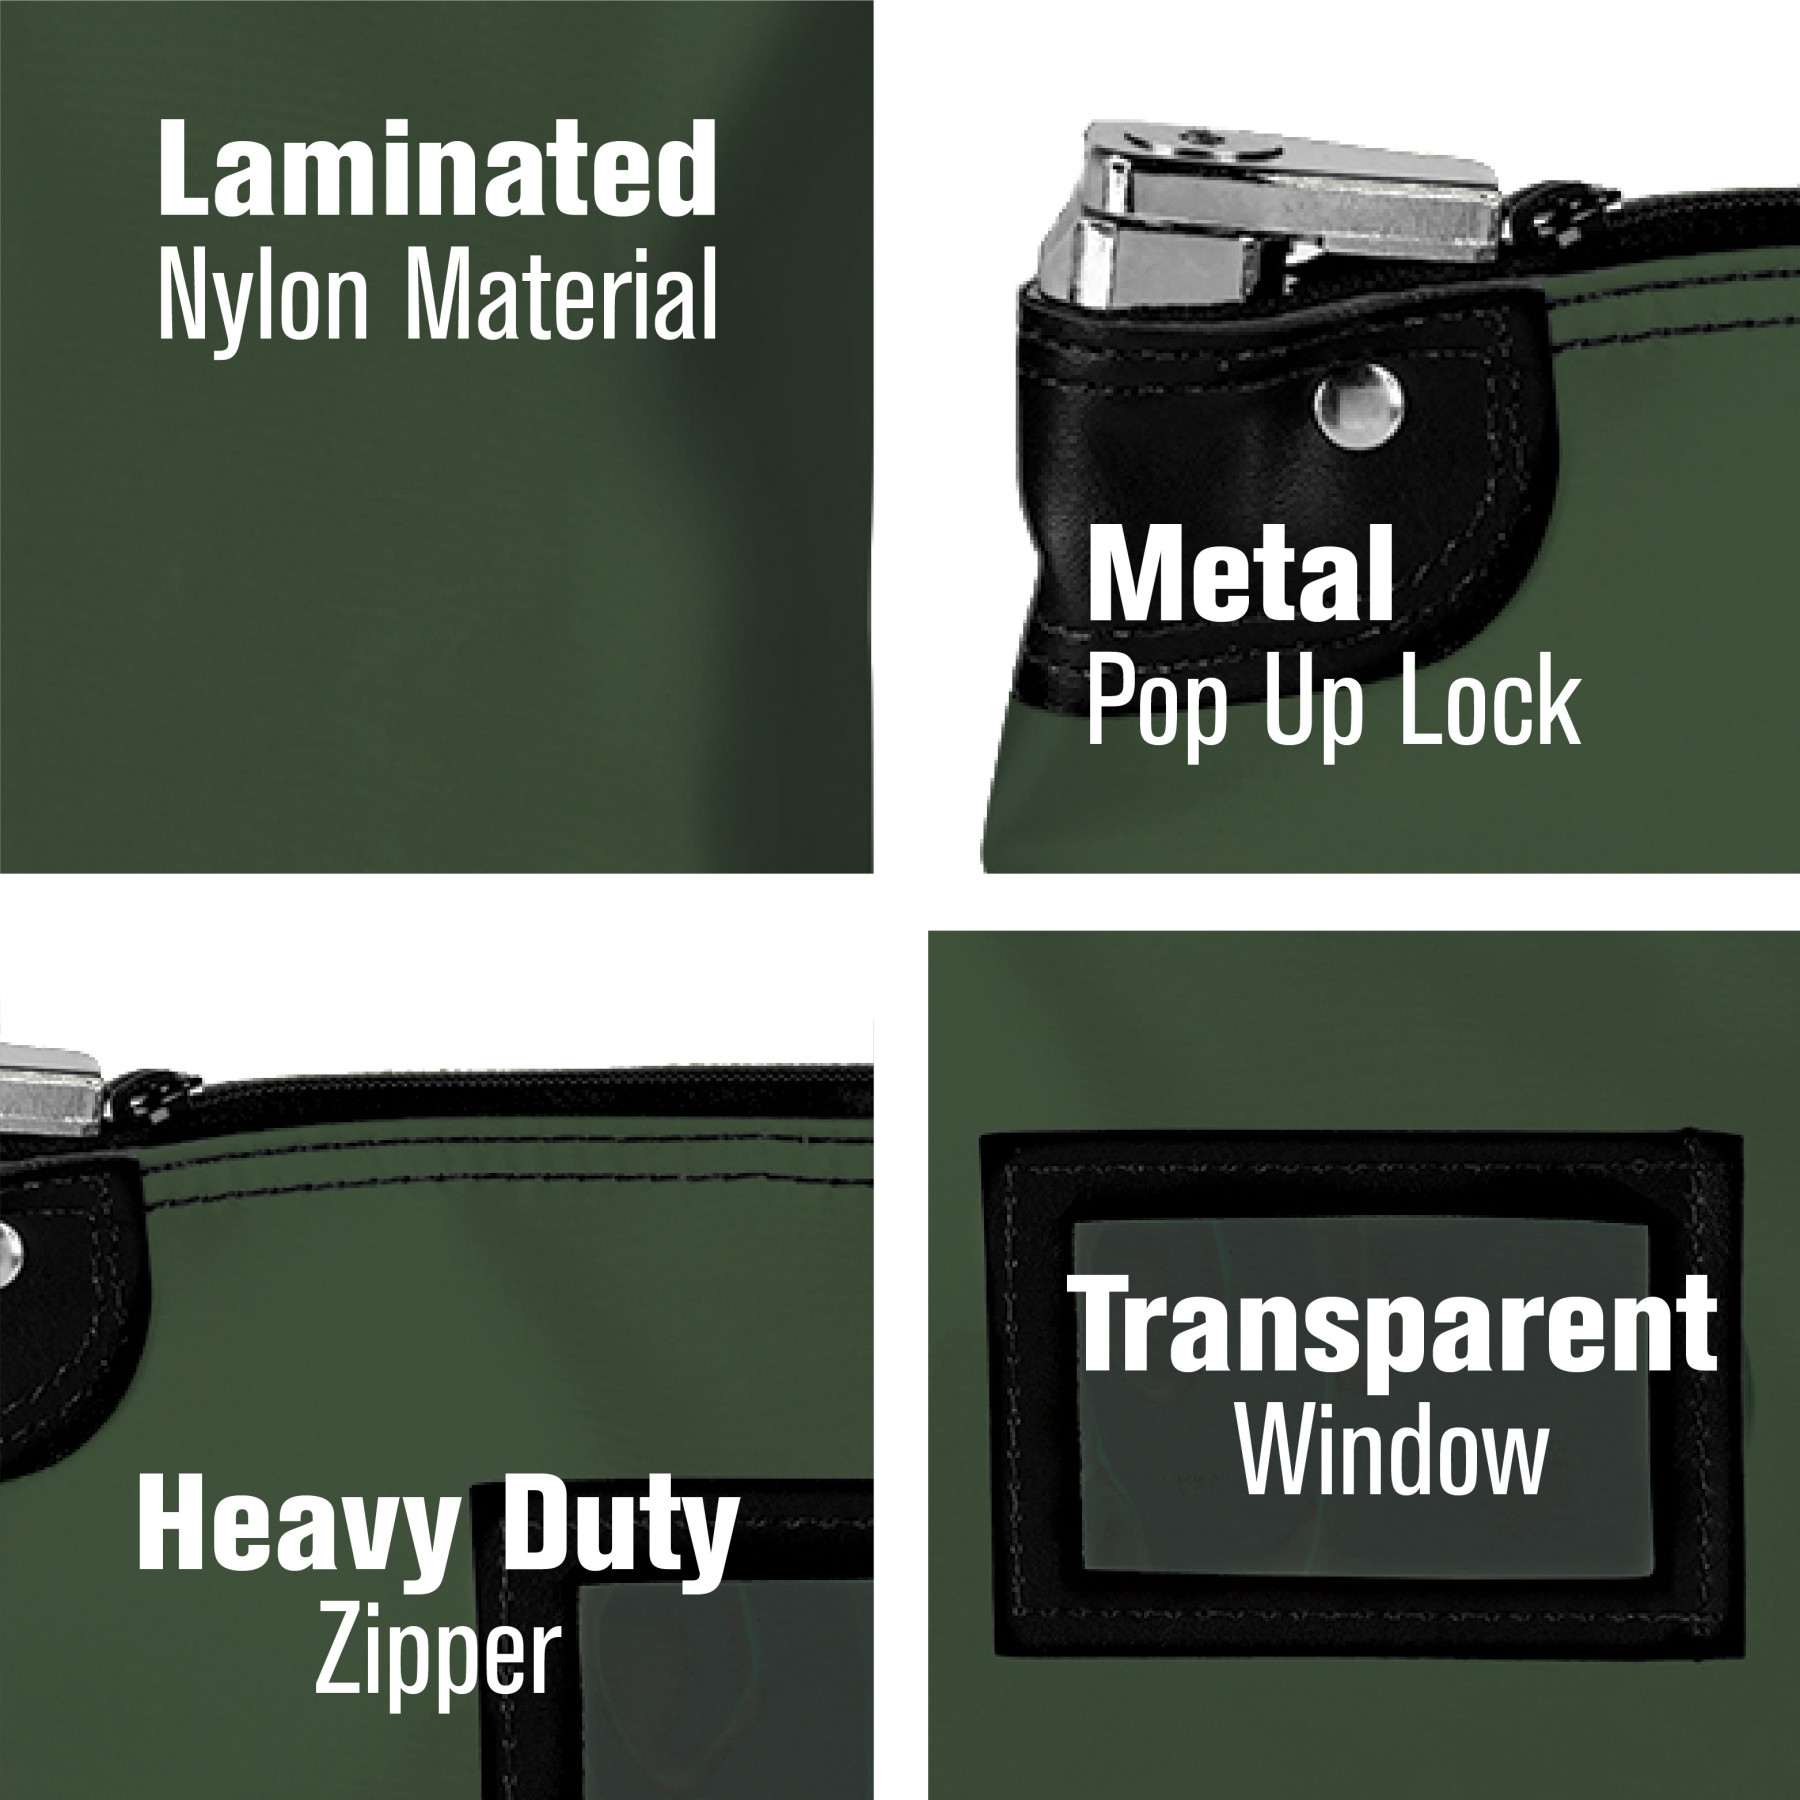 Laminated Nylon Locking Deposit Bag - 15W x 11H details